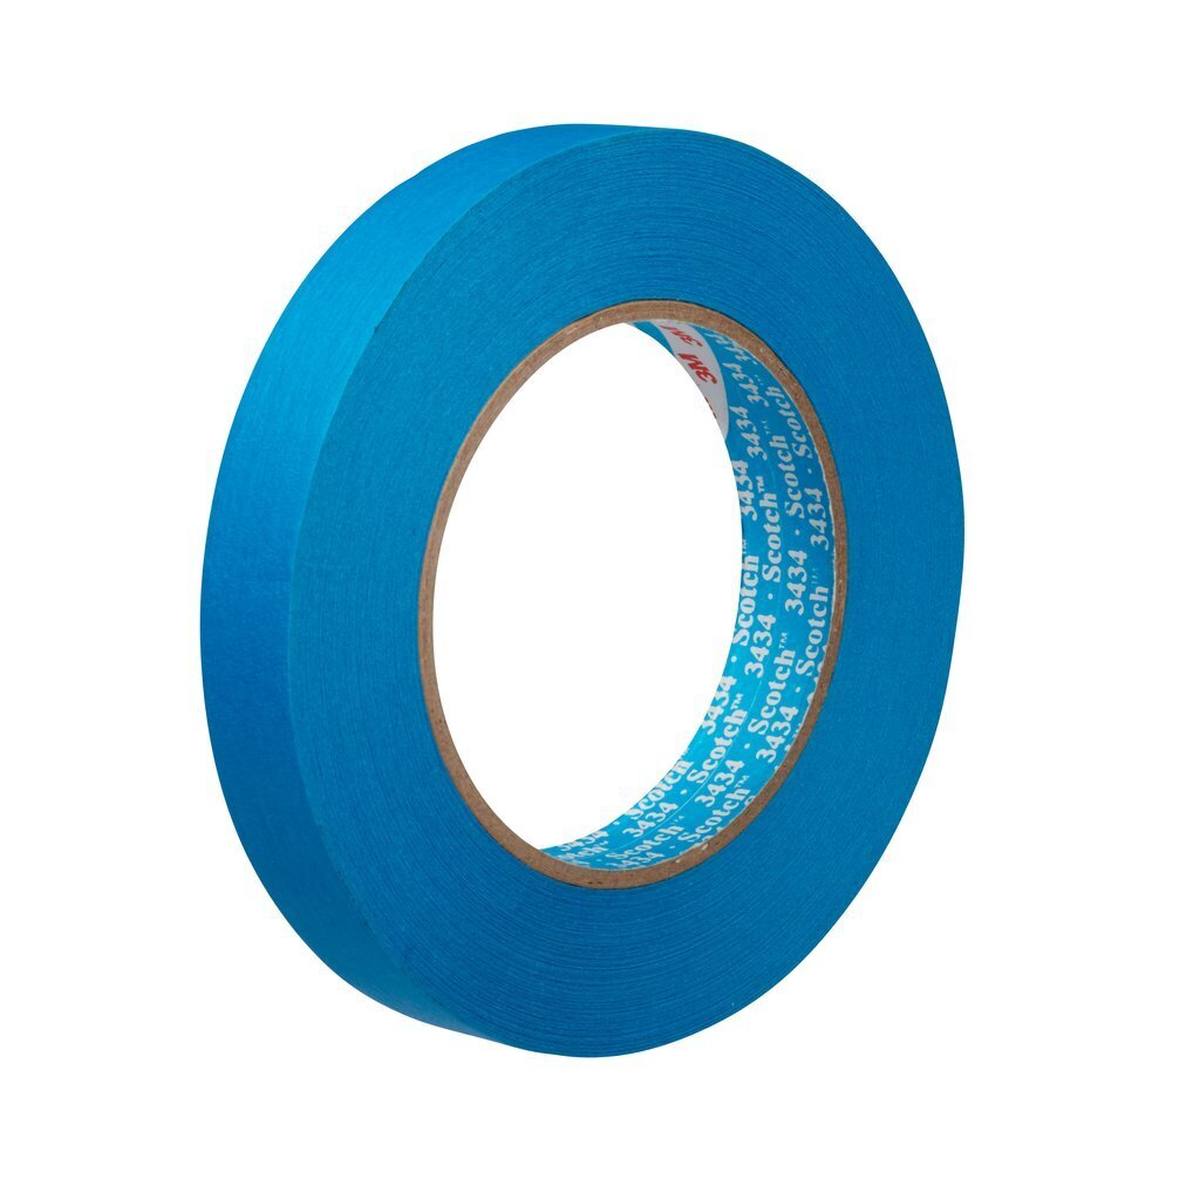 3M Scotch Blue Tape 3434, Blue, 18 mm x 50 m #07895